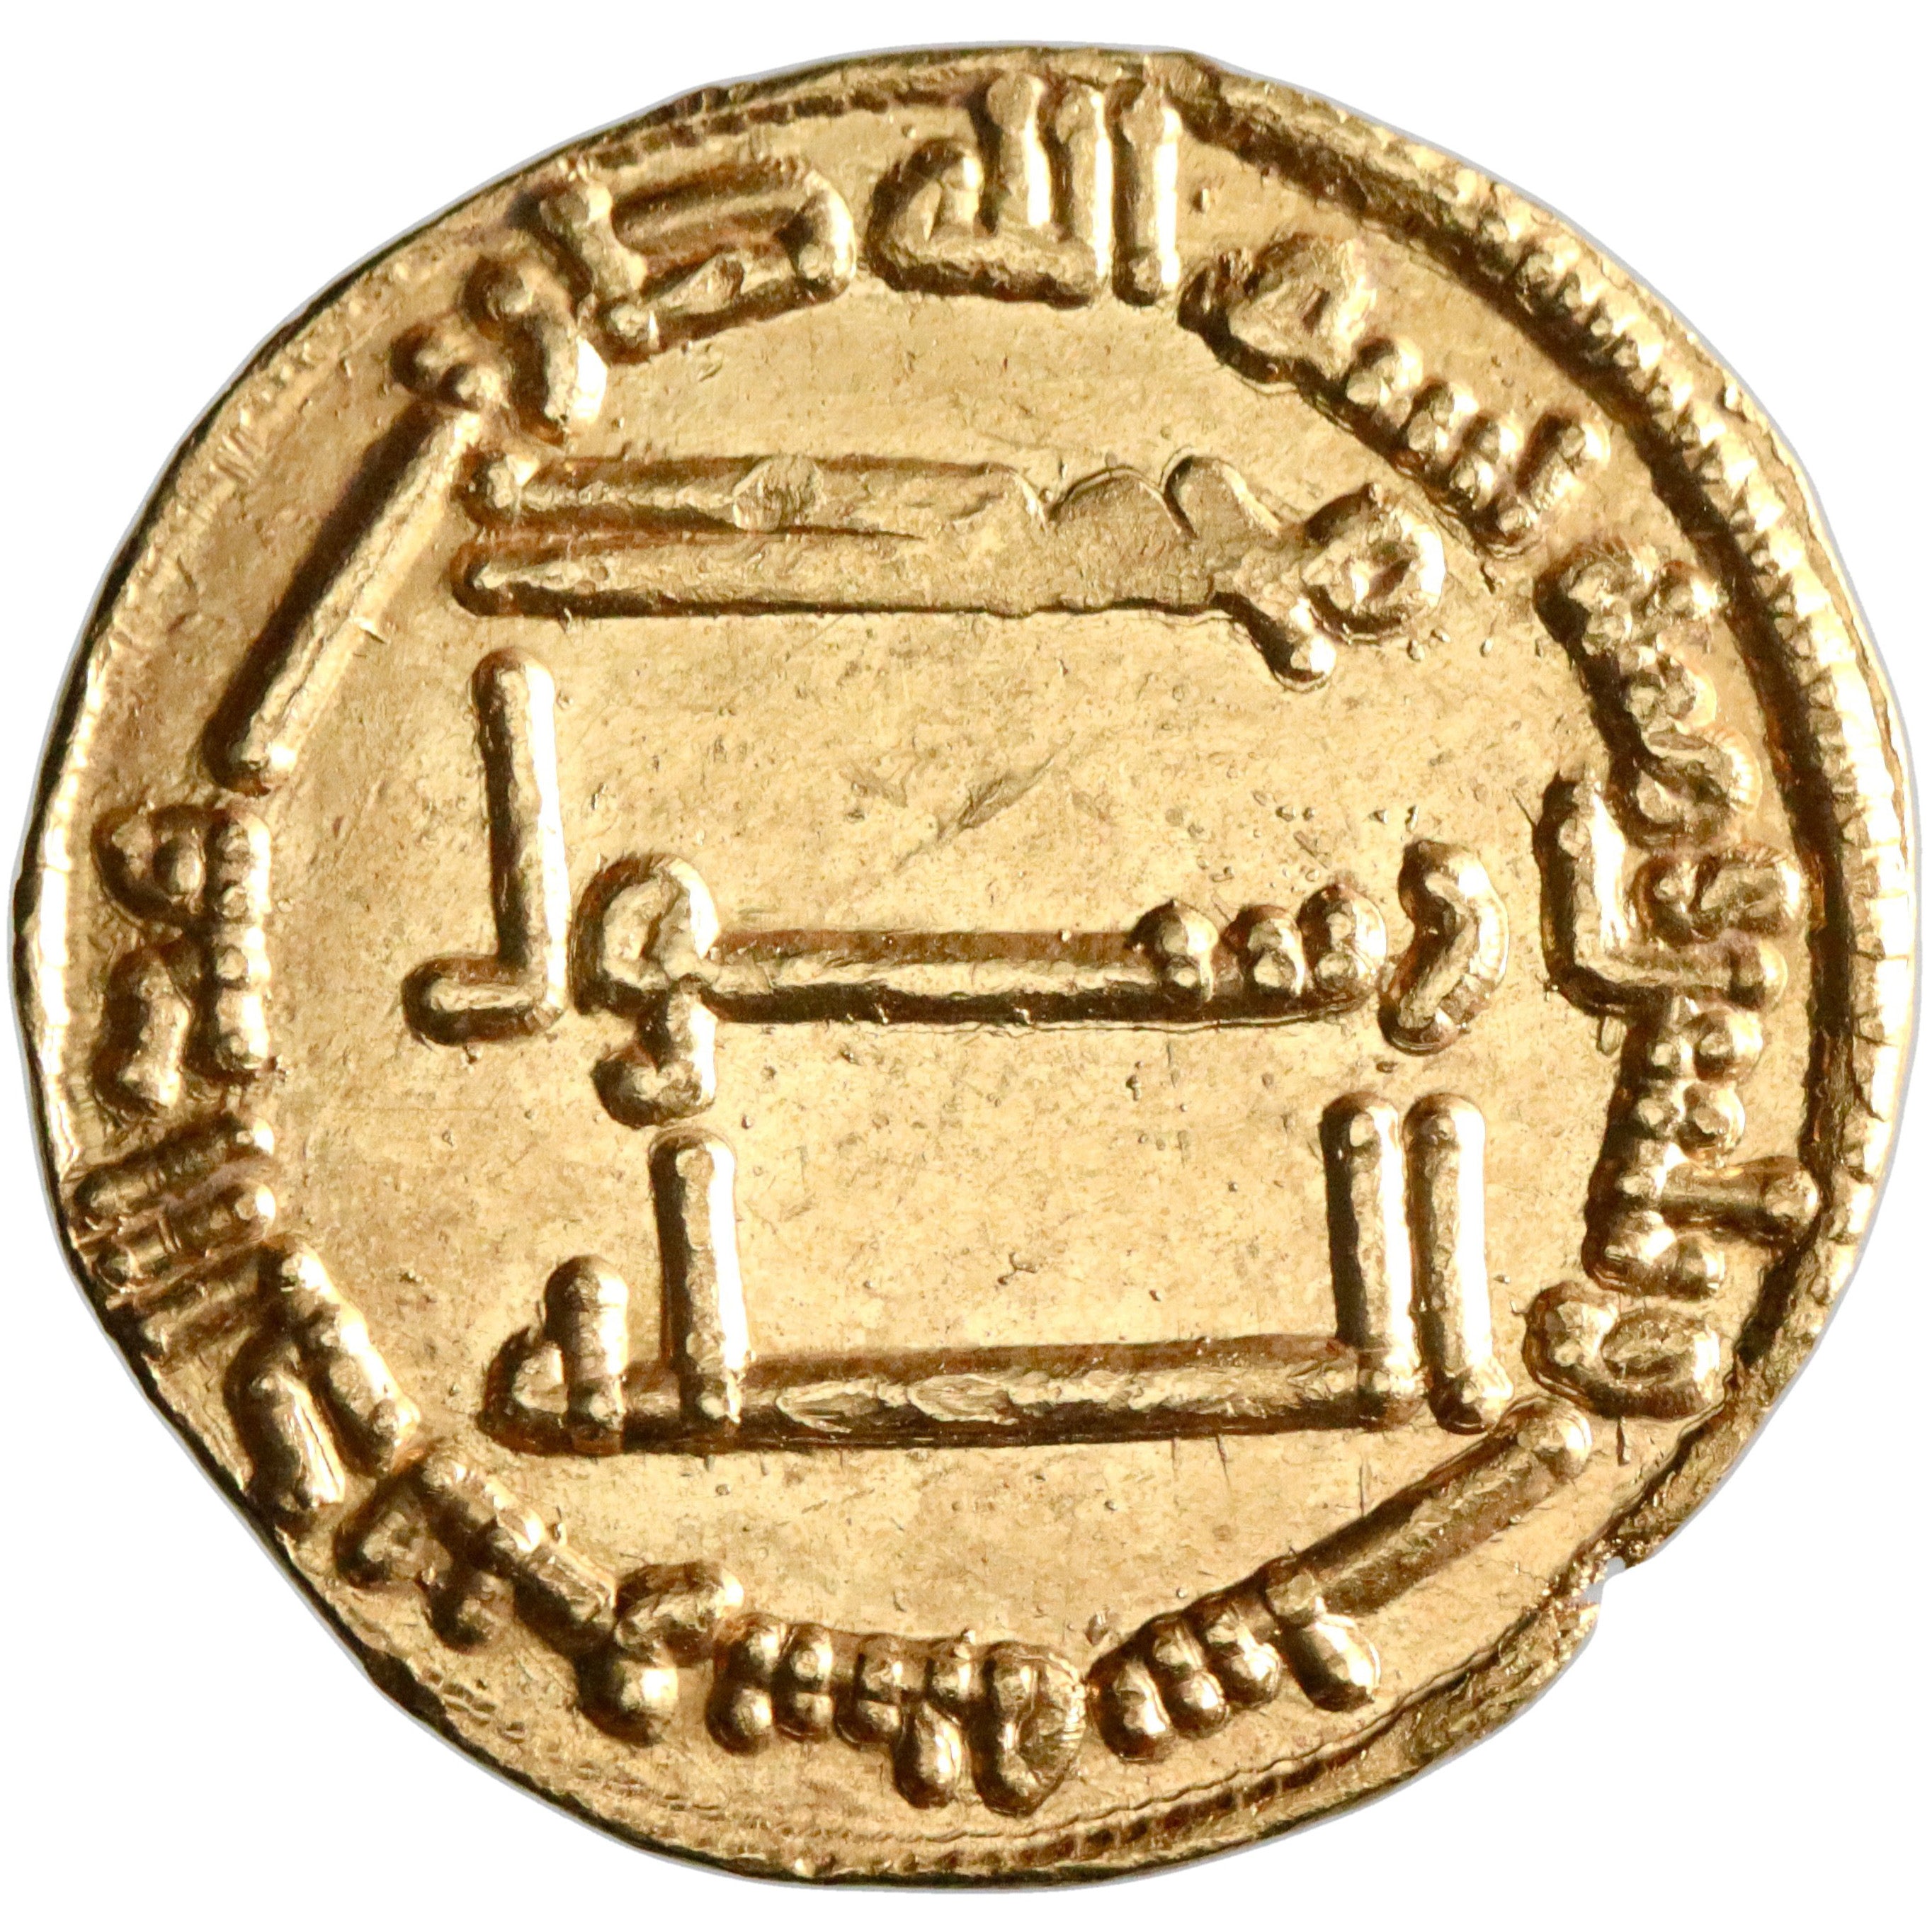 Abbasid, al-Saffah, gold dinar, AH 136